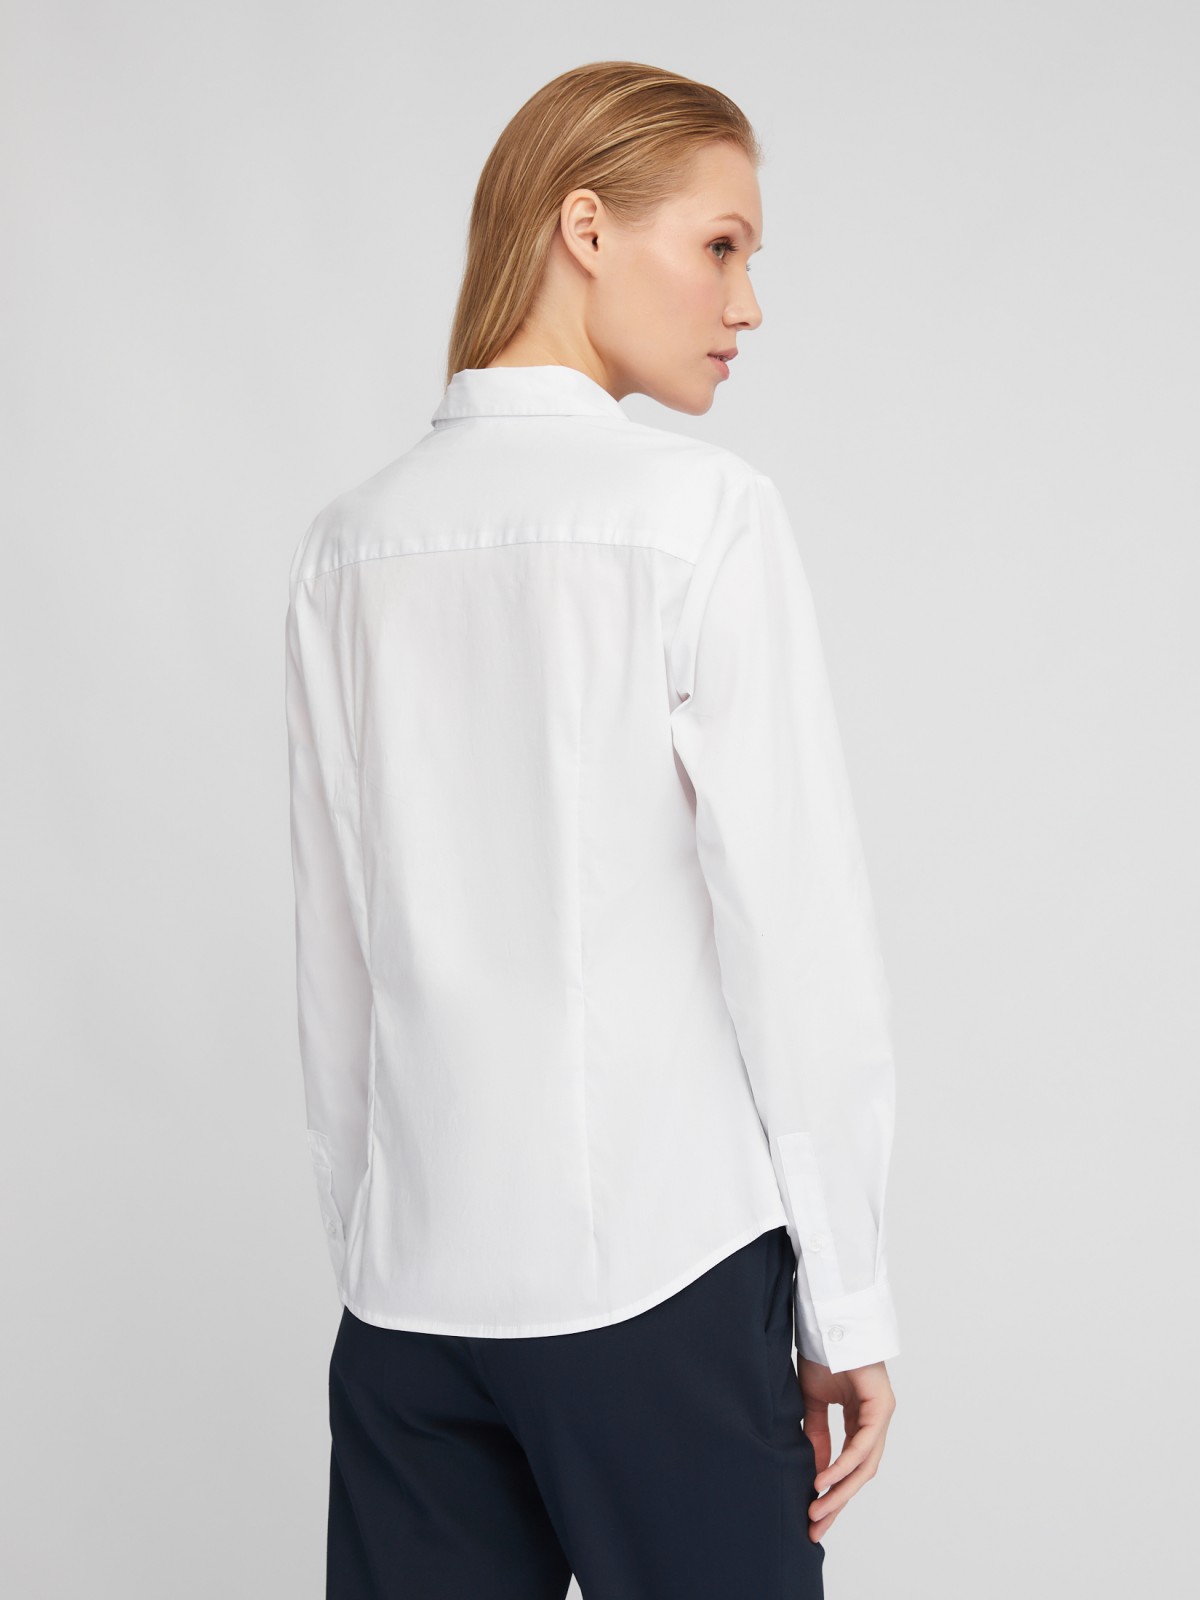 Офисная рубашка полуприлегающего силуэта с принтом-надписью zolla 024111159082, цвет белый, размер XS - фото 6